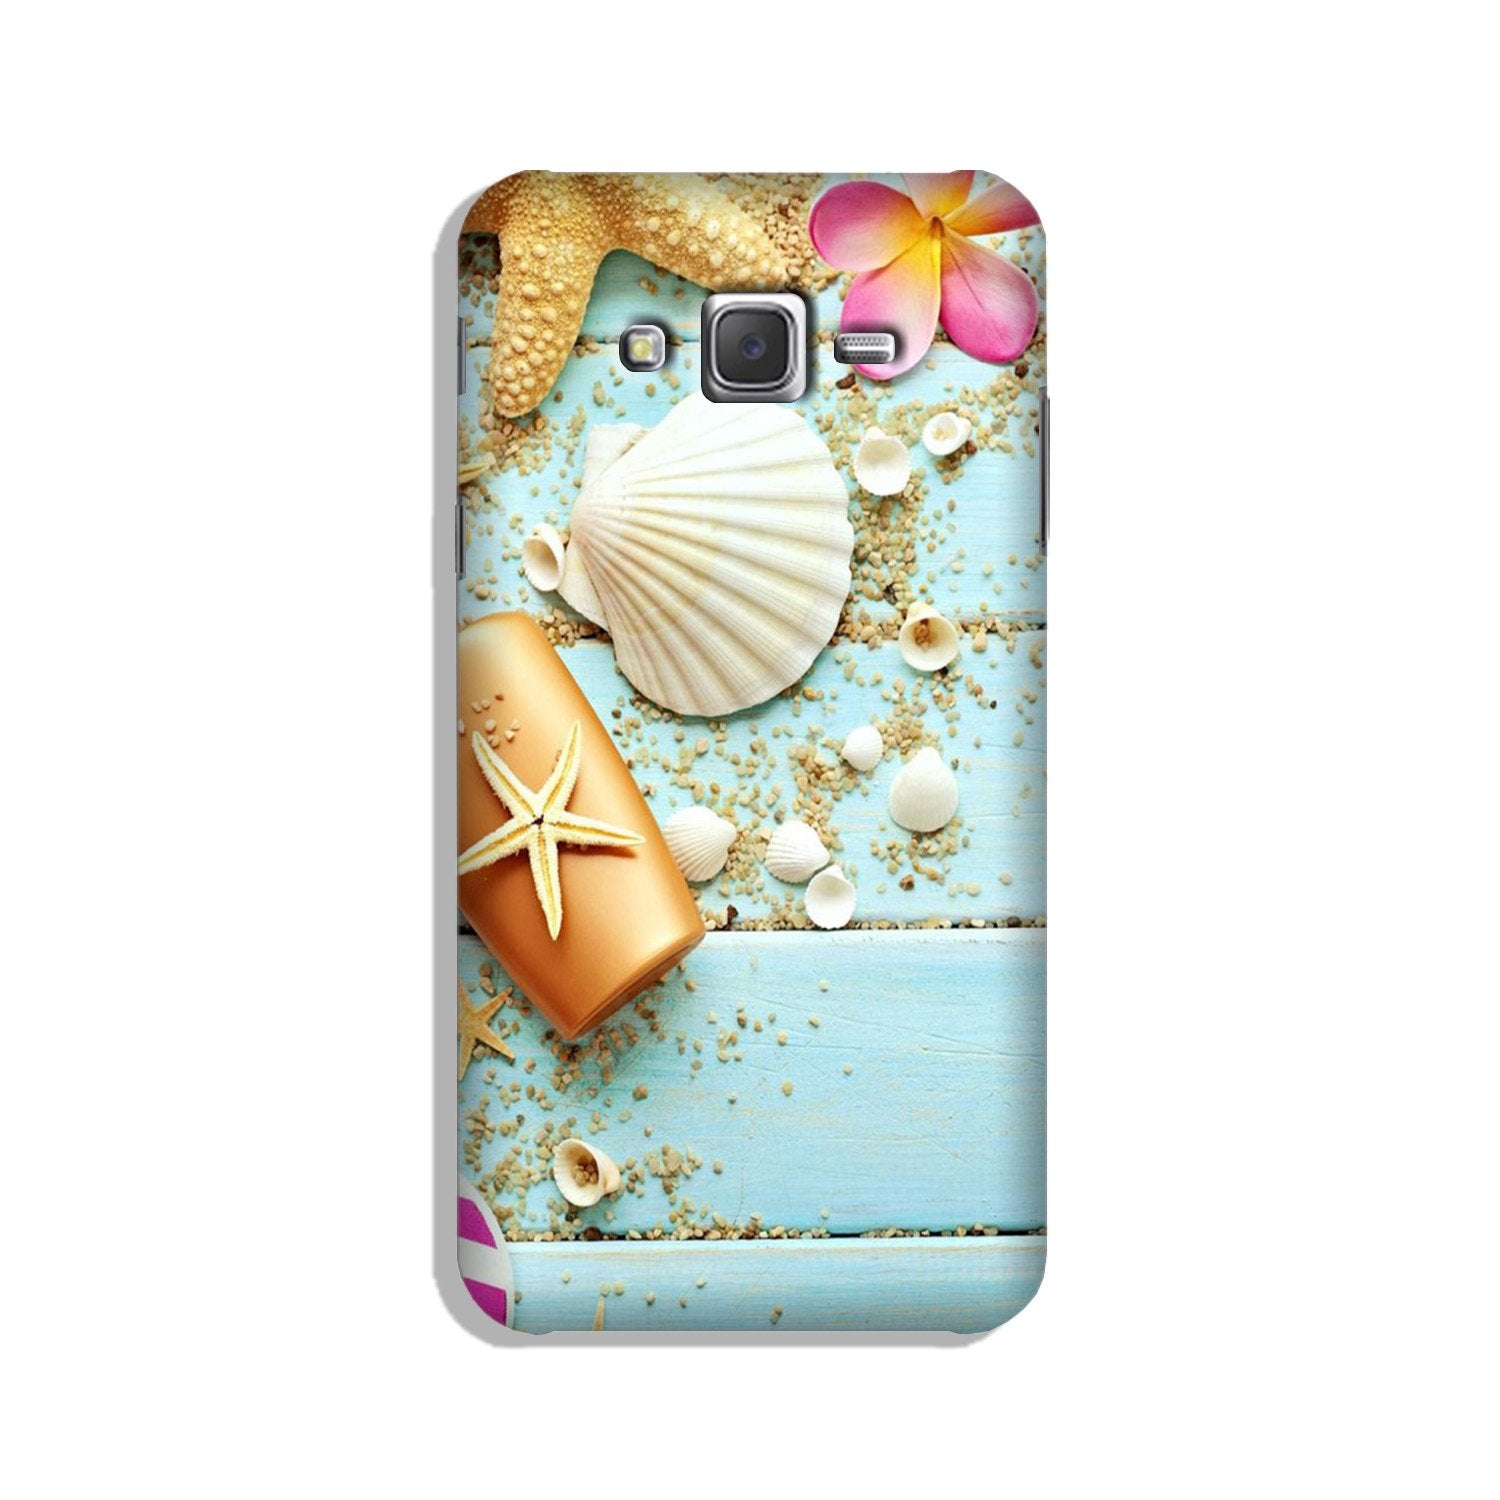 Sea Shells Case for Galaxy J2 (2015)